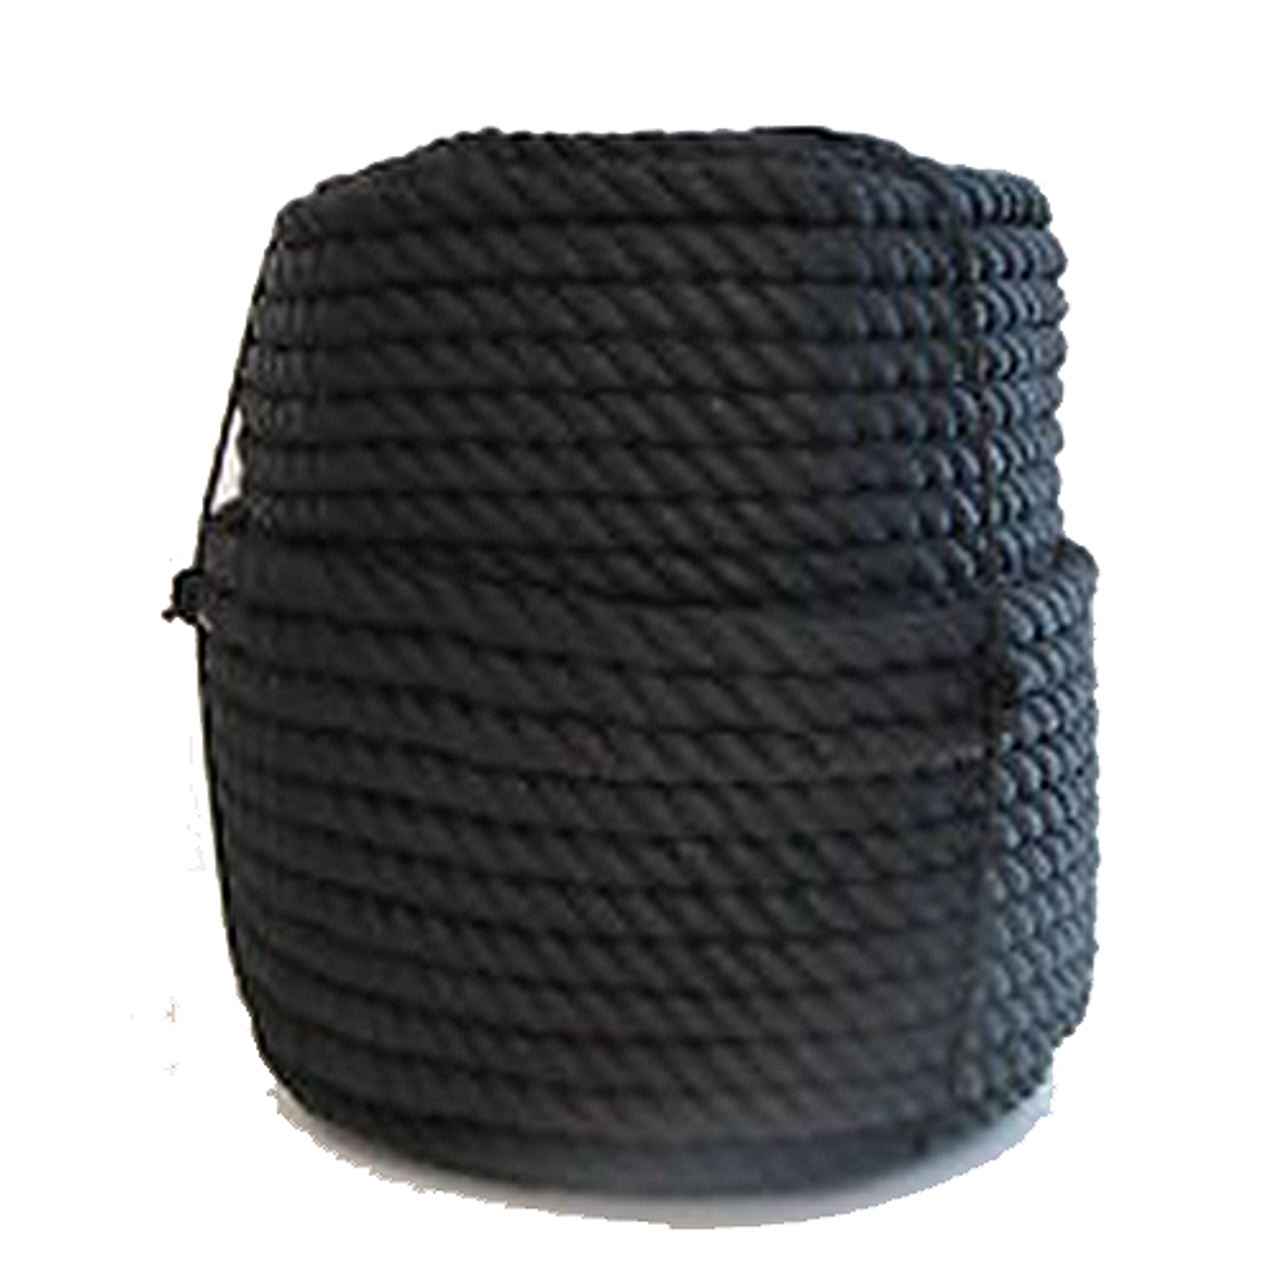 1/4" Black UV Rope 2300' Coil